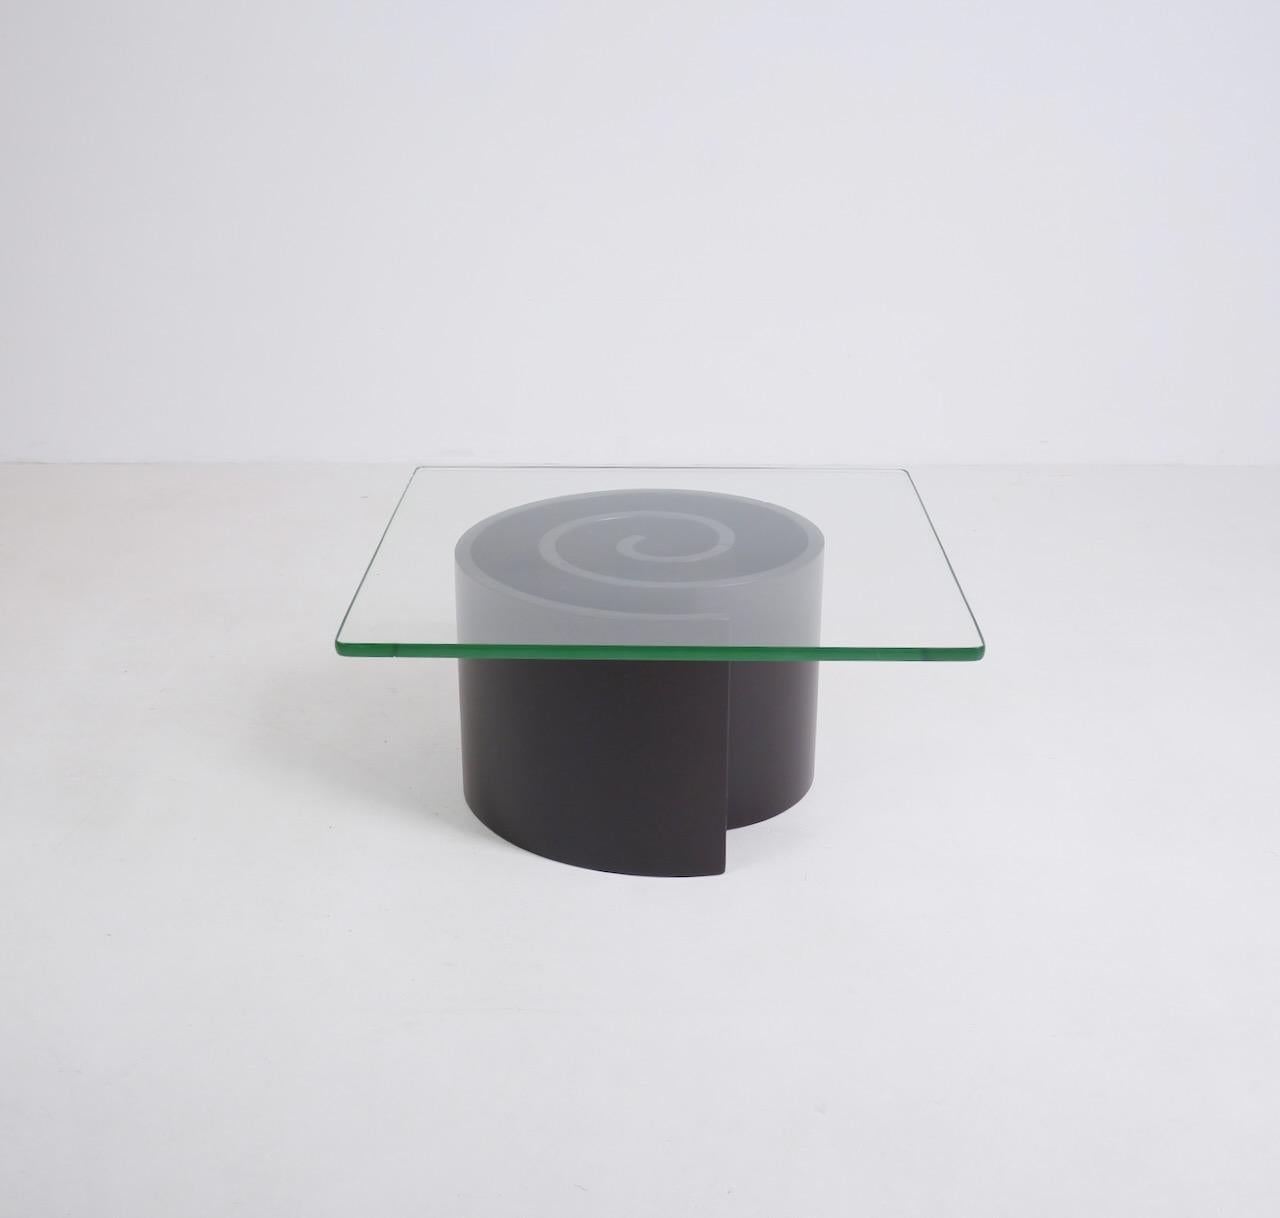 Ein tiefbraun lackierter, spiralförmiger Couchtisch aus Holz und Glas nach Vladimir Kagans Schneckentisch. Der Sockel besteht aus 4 separaten, gebogenen Holzteilen, die sich ineinander verhaken und eine Spirale bilden. Die Glasplatte ist sehr